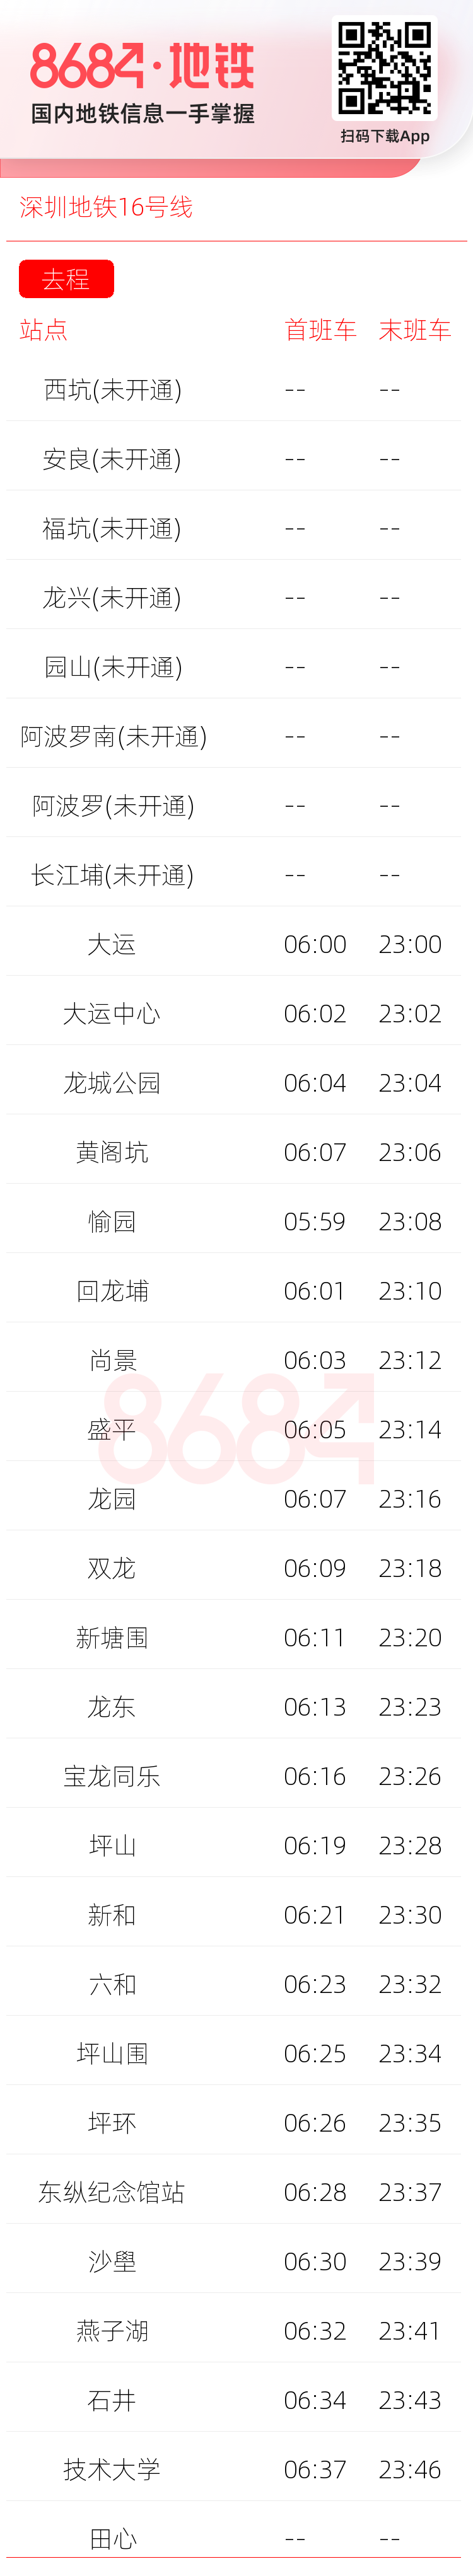 深圳地铁16号线运营时间表